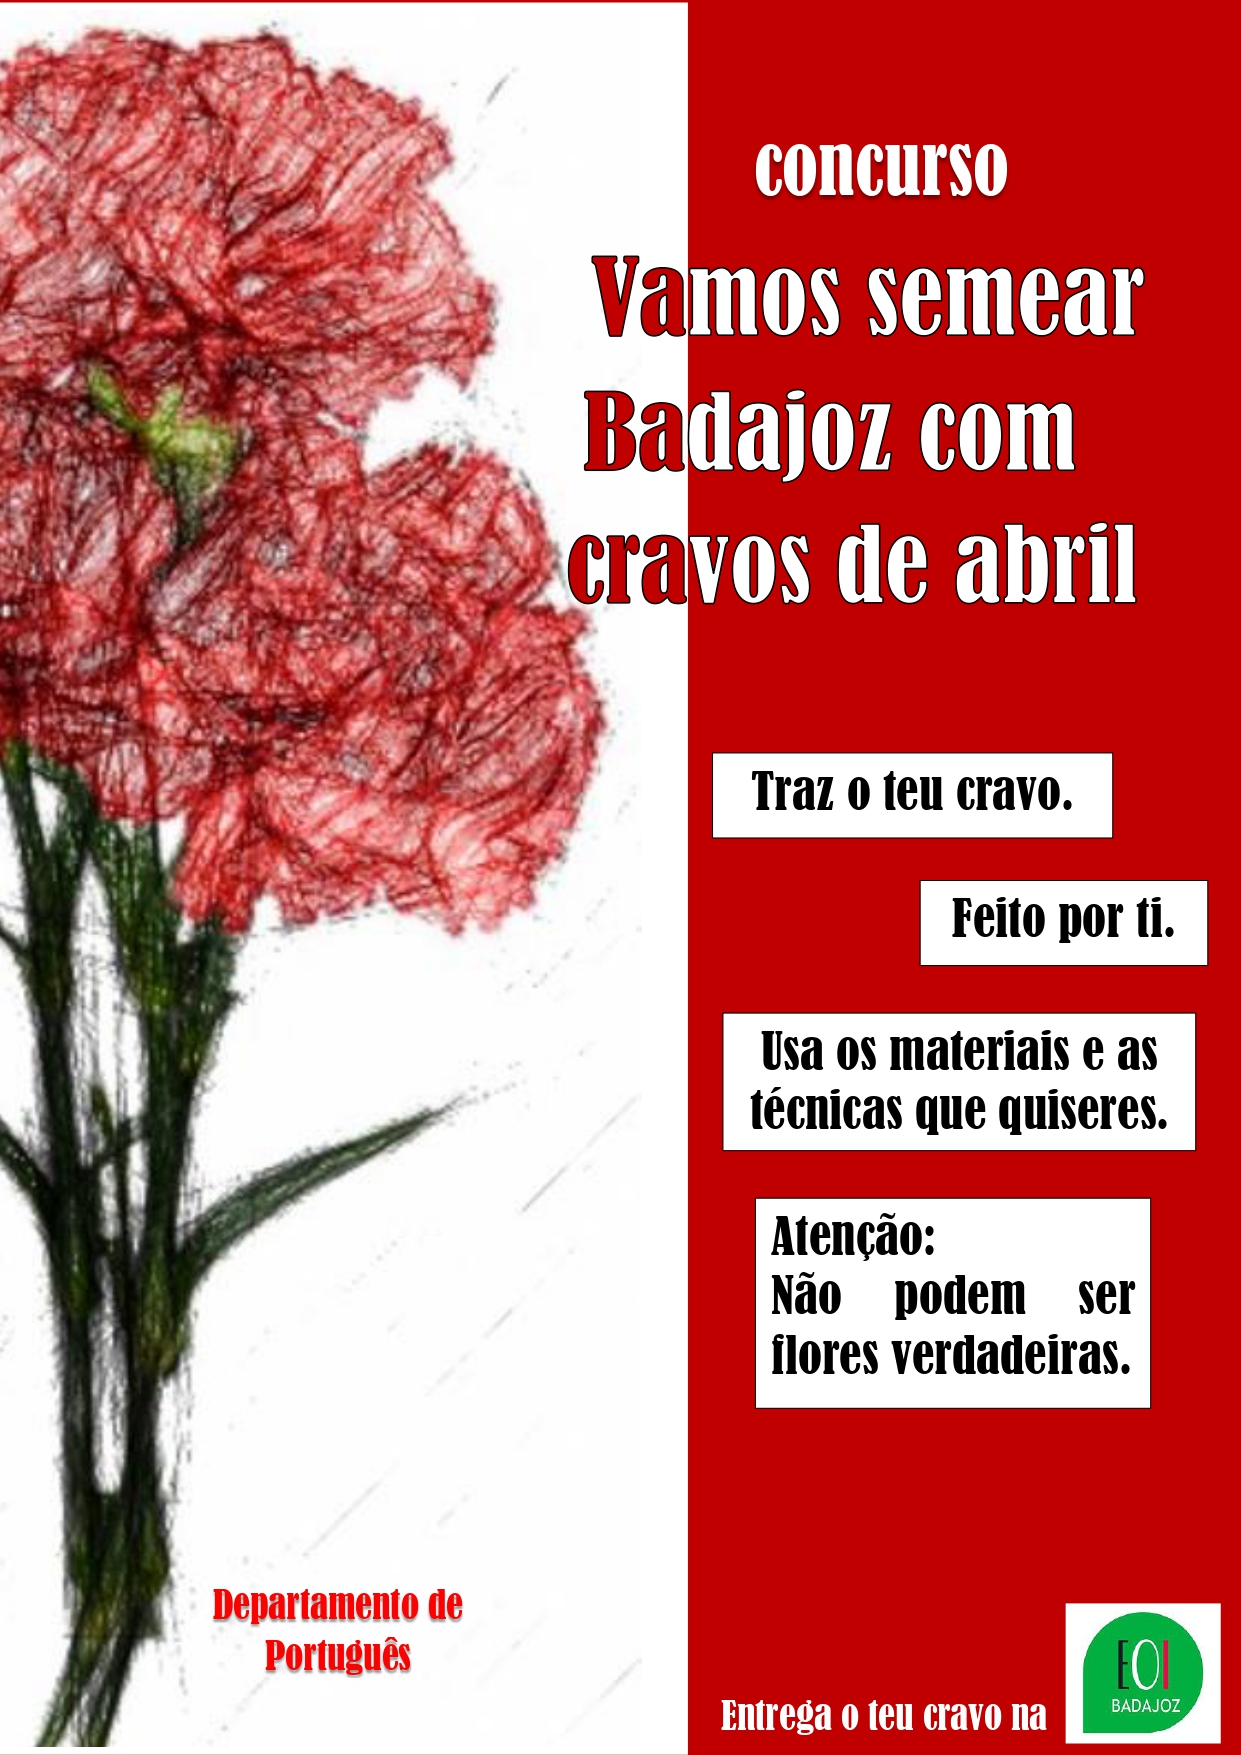 Cartel concurso Vamos semear Badajoz com cravos de Abril